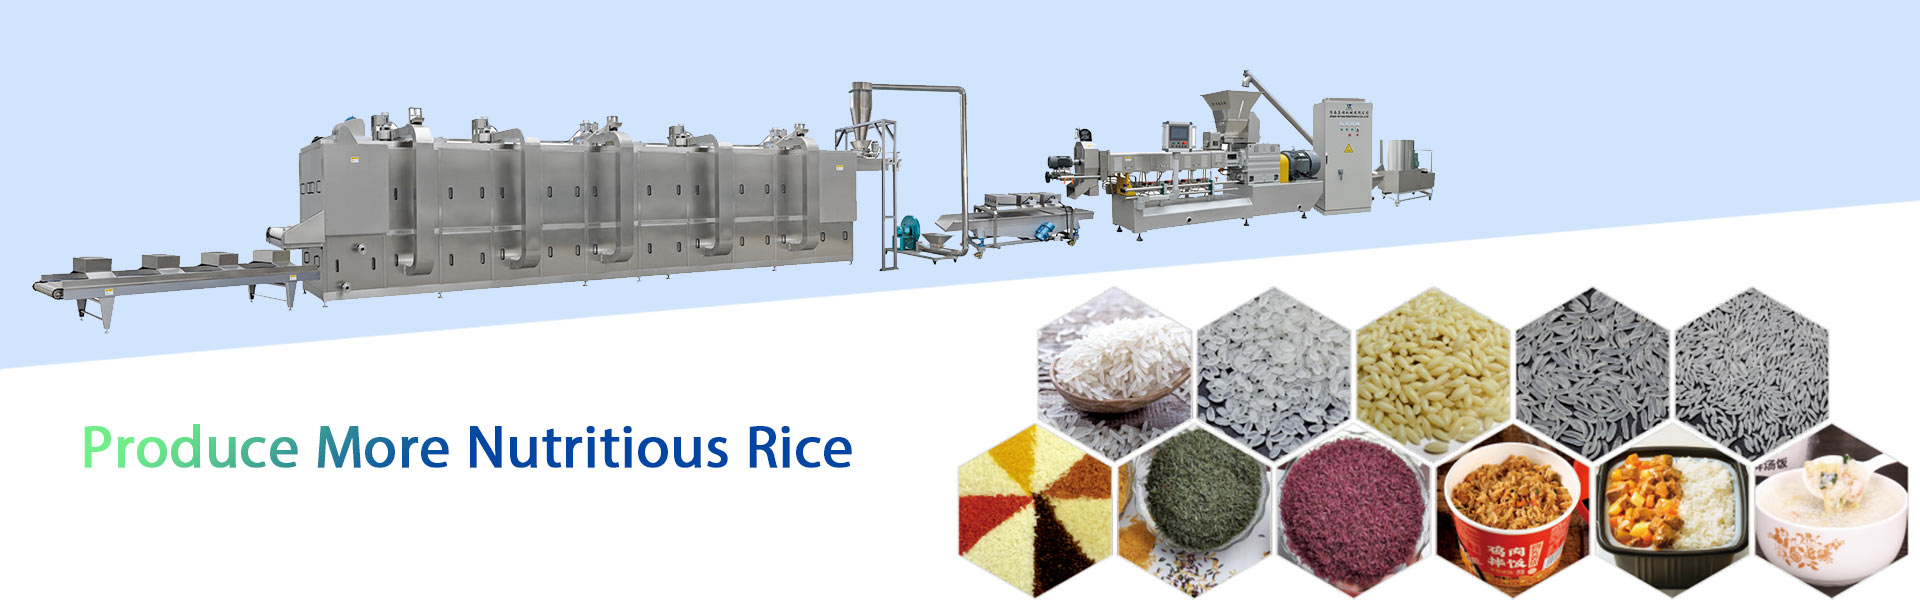 Производить более питательный рис